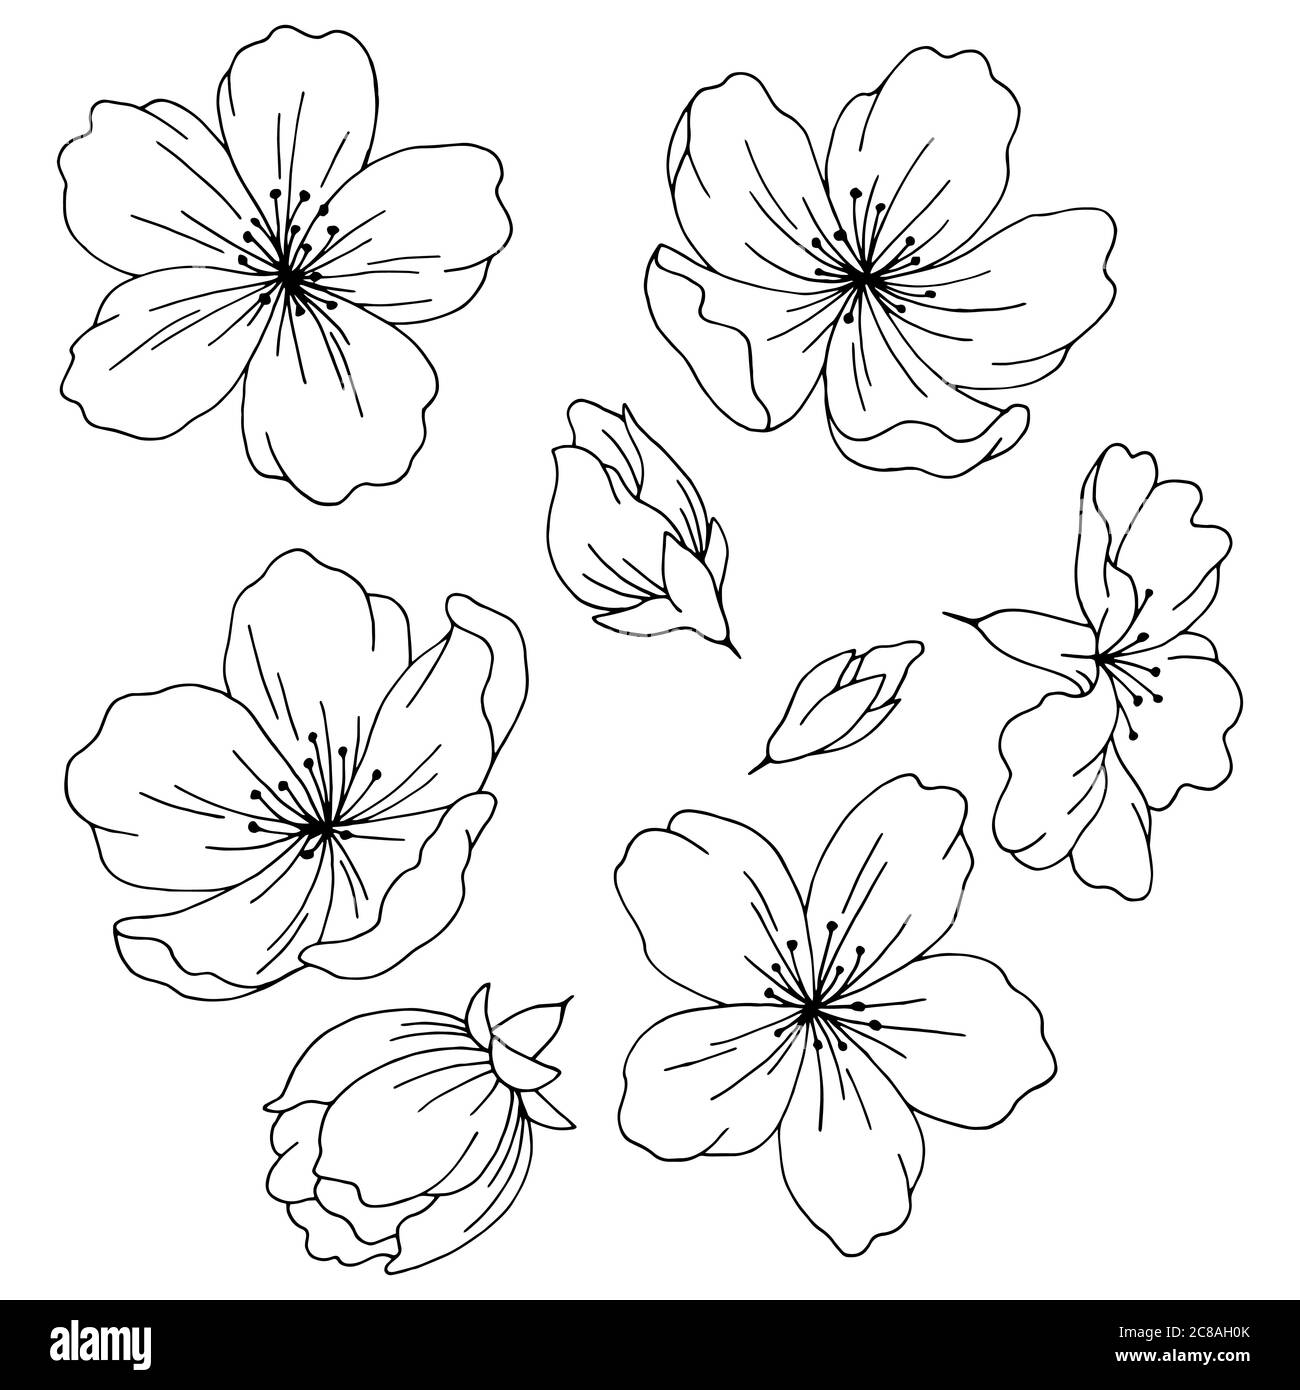 Sakura graphic flower black white isolated sketch set illustration vector Stock Vector